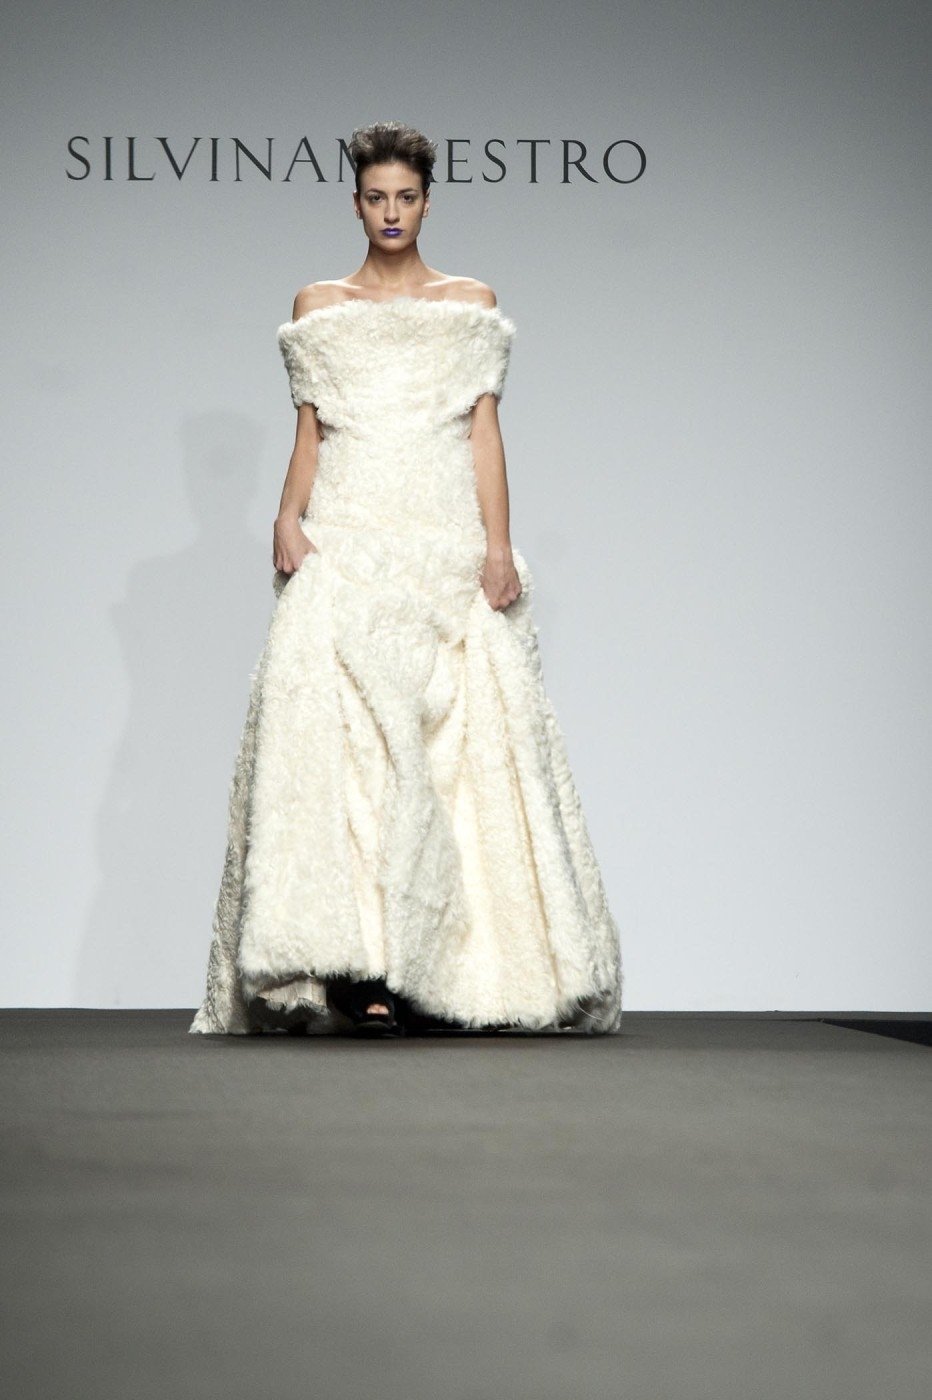 Svatební šaty britské módní návrhářky Silviny Maestro